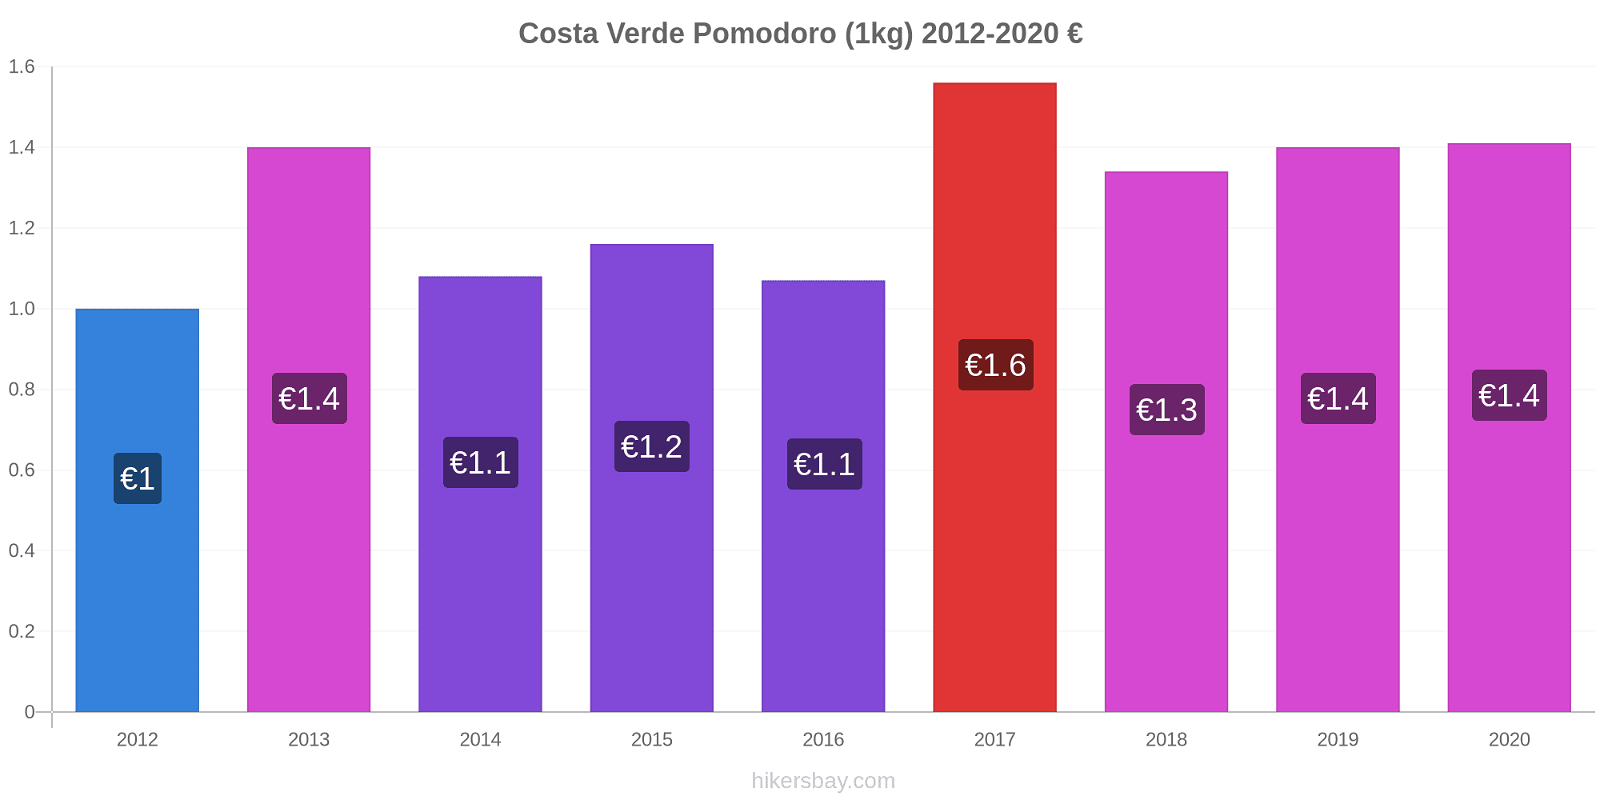 Costa Verde variazioni di prezzo Pomodoro (1kg) hikersbay.com